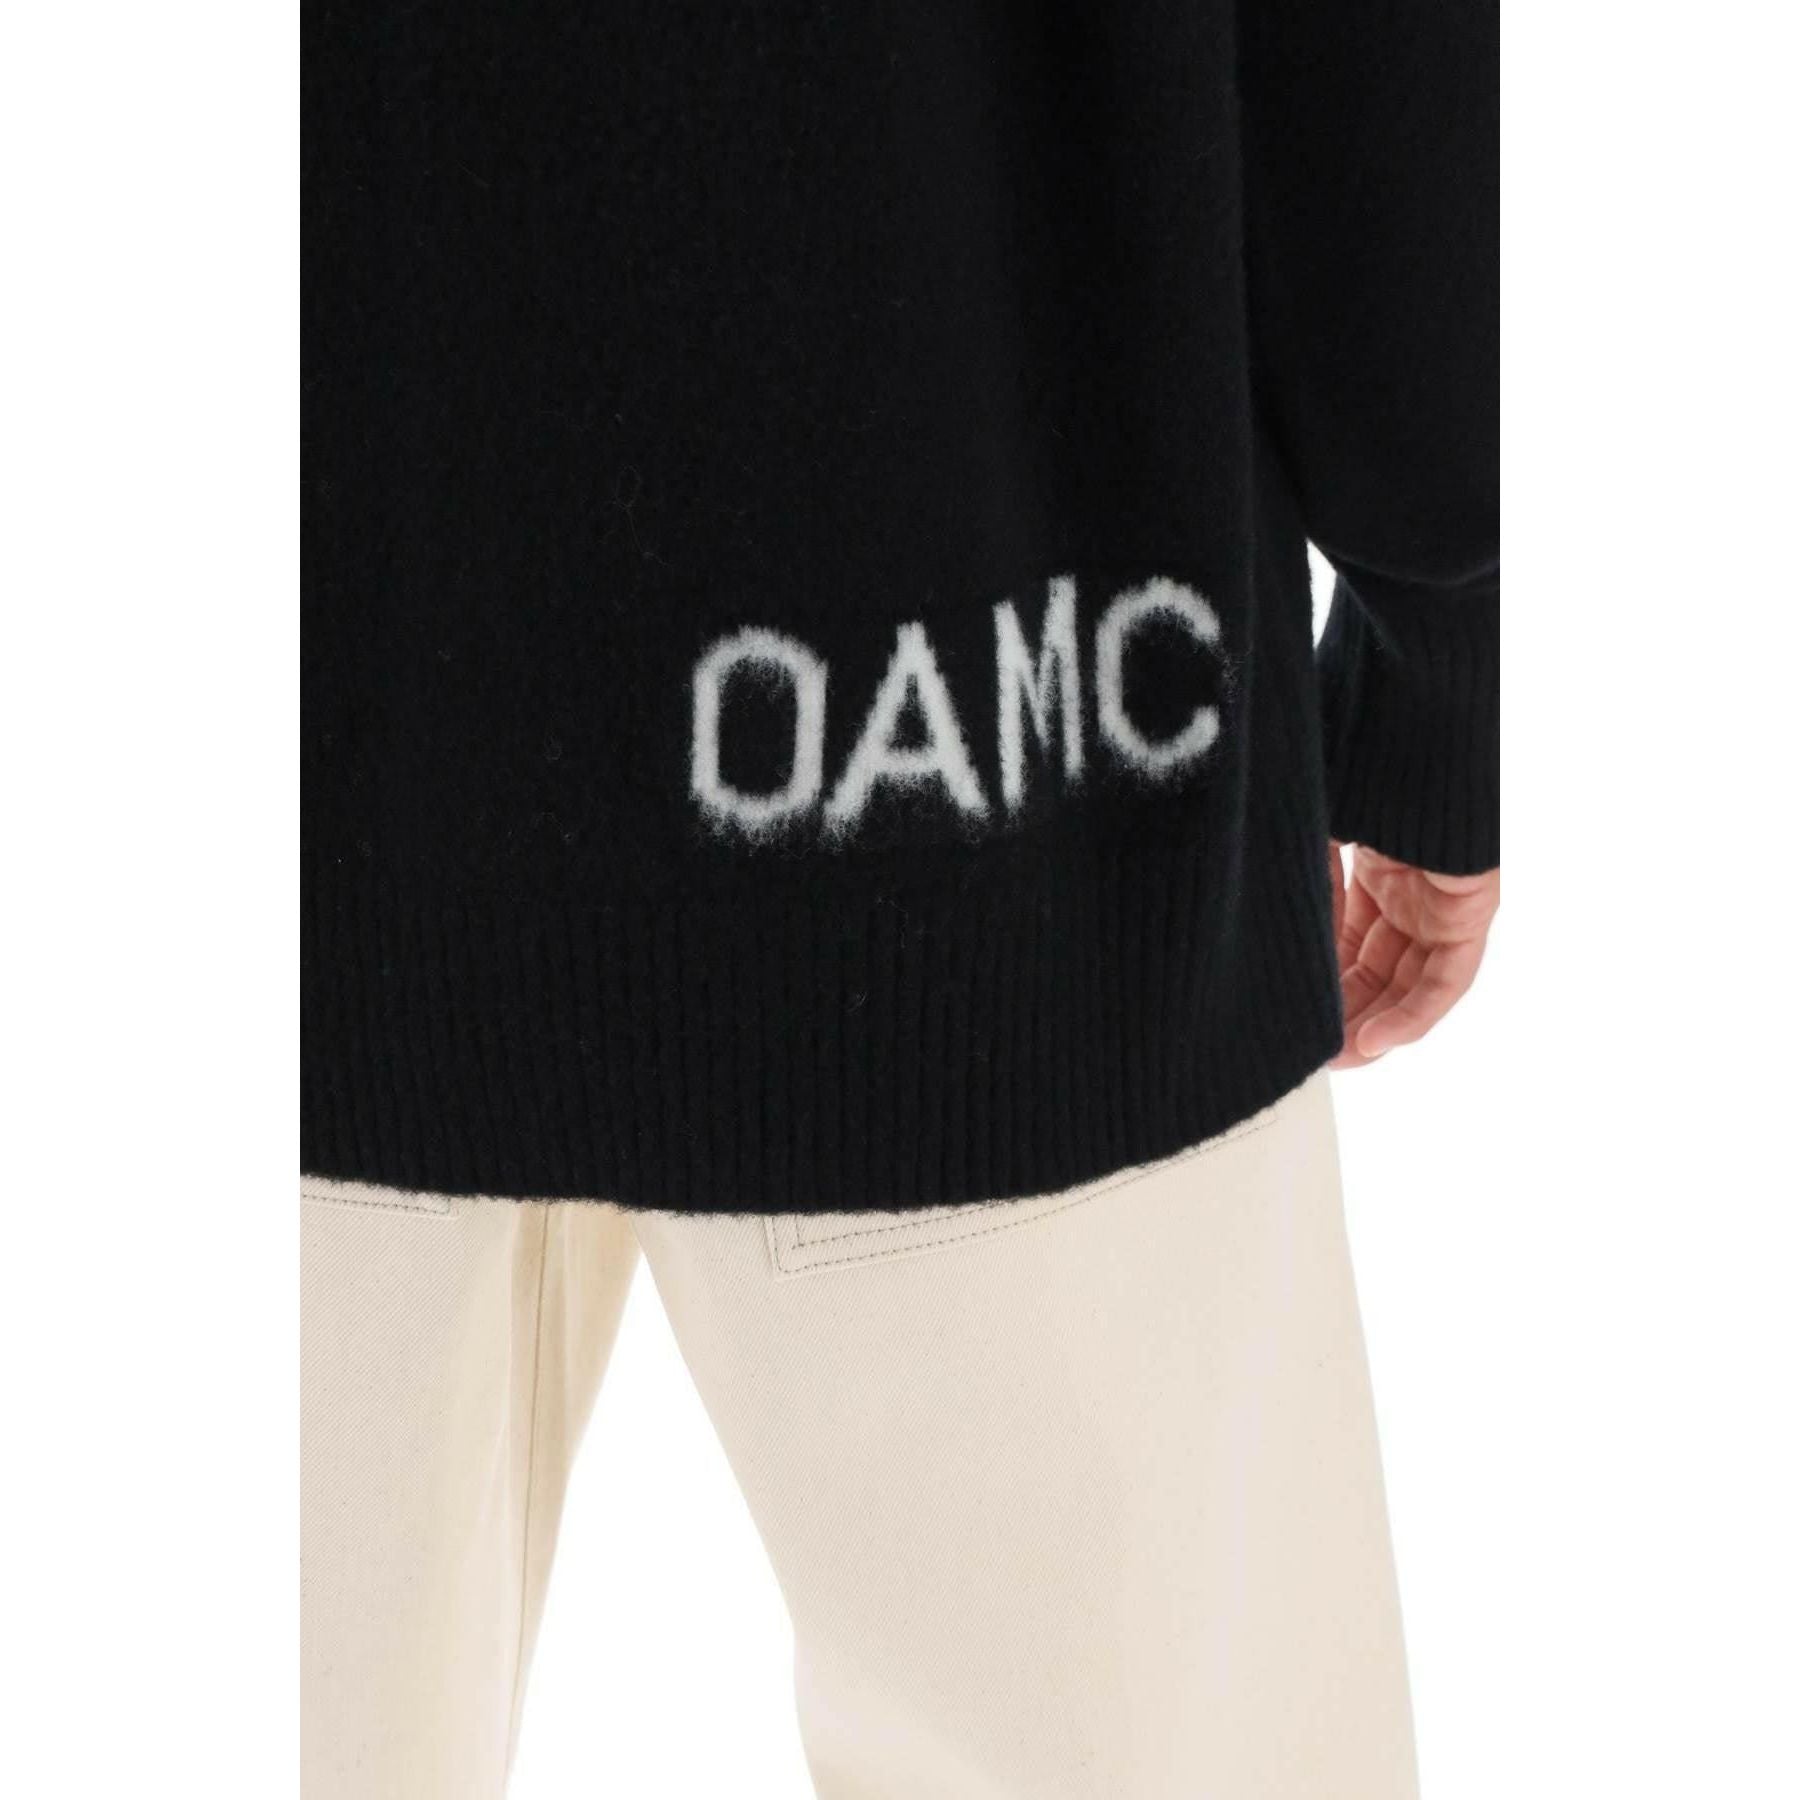 Wool Sweater With Jacquard Logo OAMC JOHN JULIA.